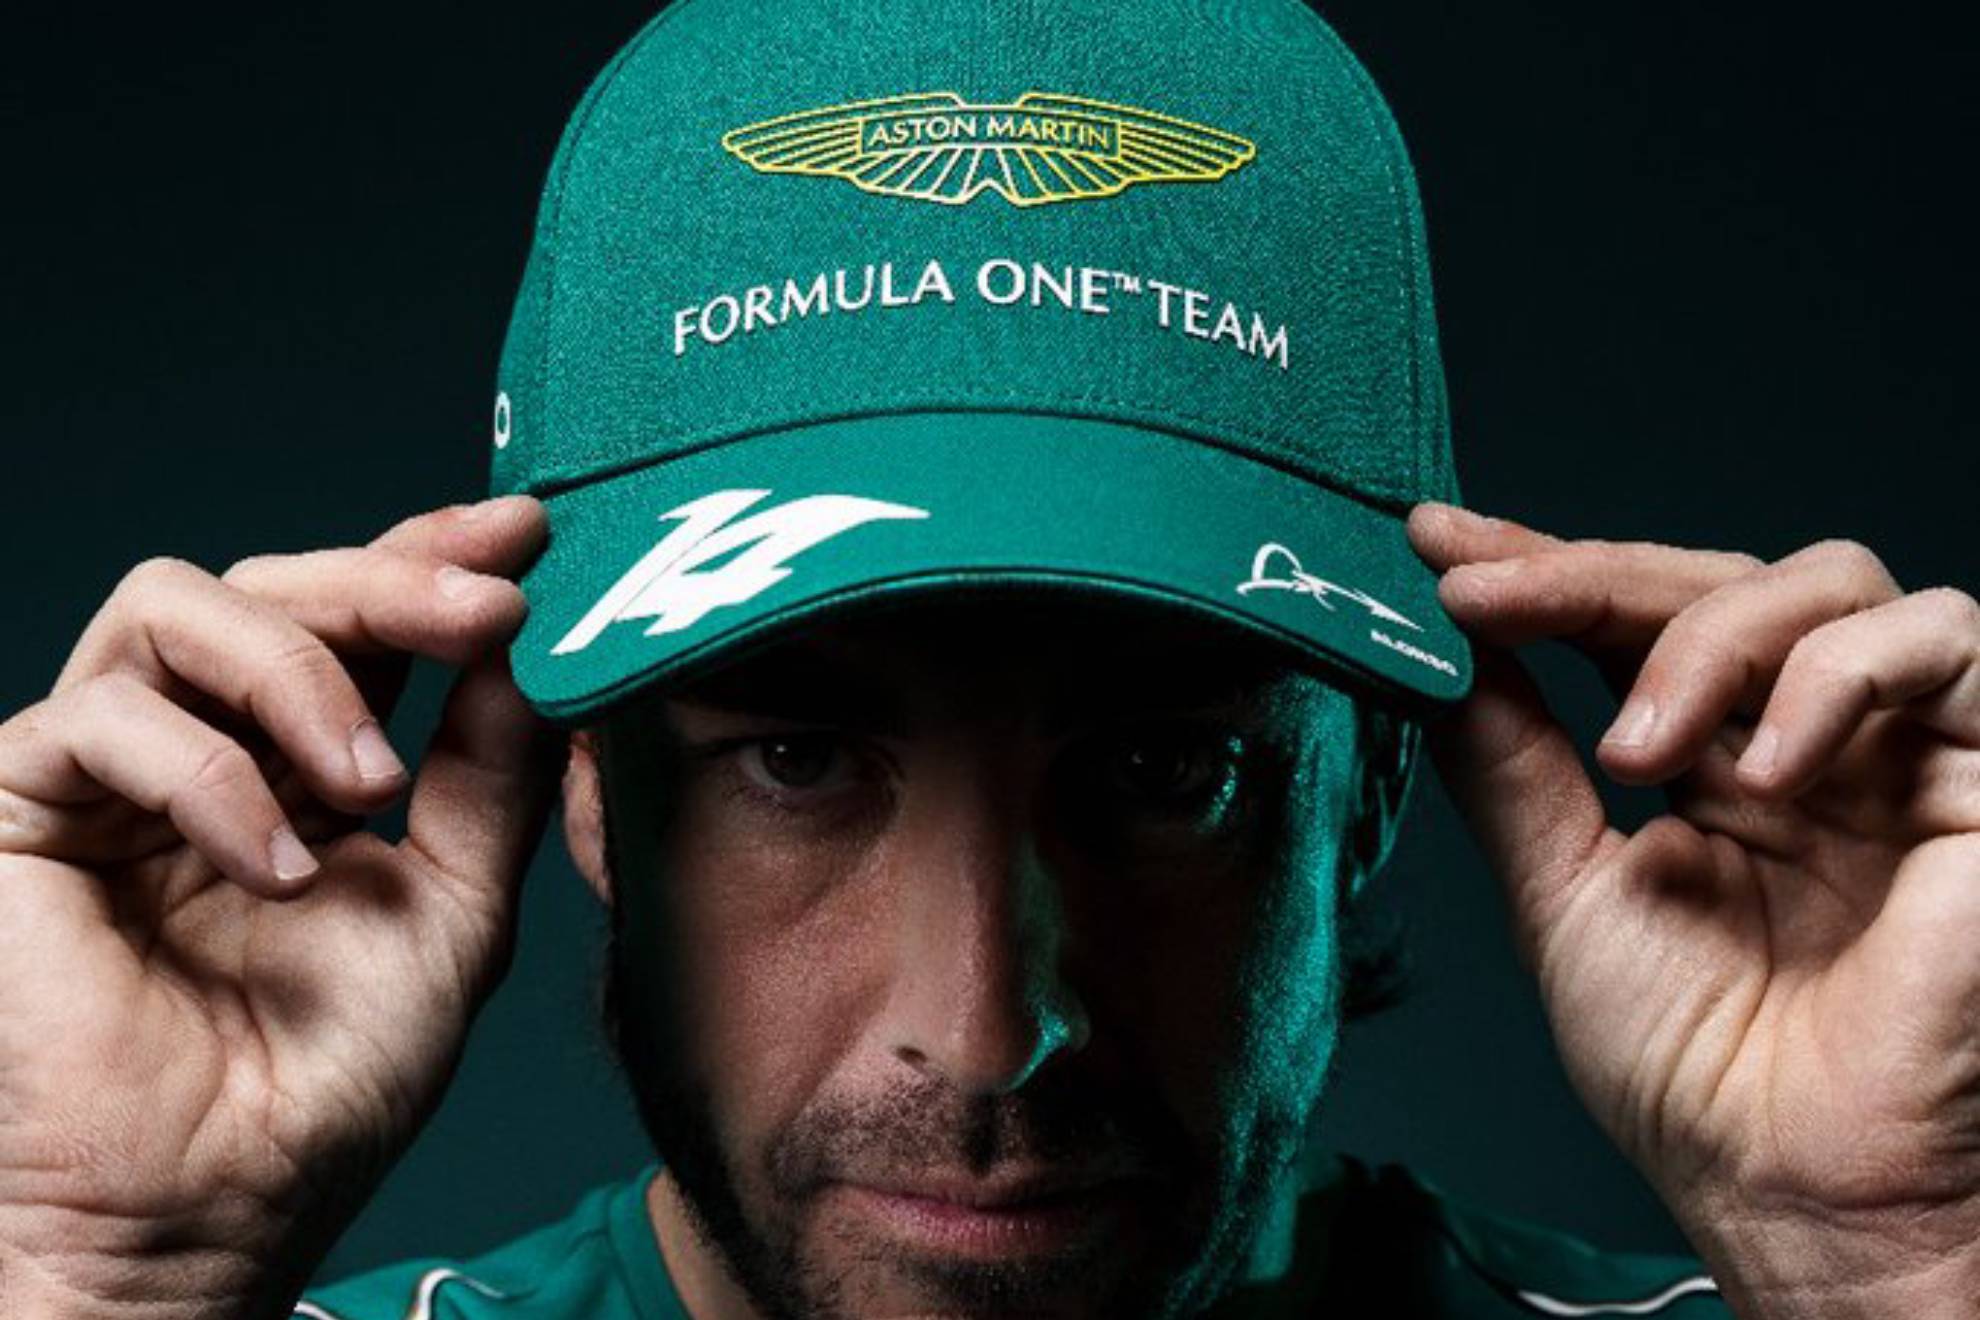 Gorra Fernando Alonso EDICION LIMITADA GP de BRASIL Aston Martin Formula 1